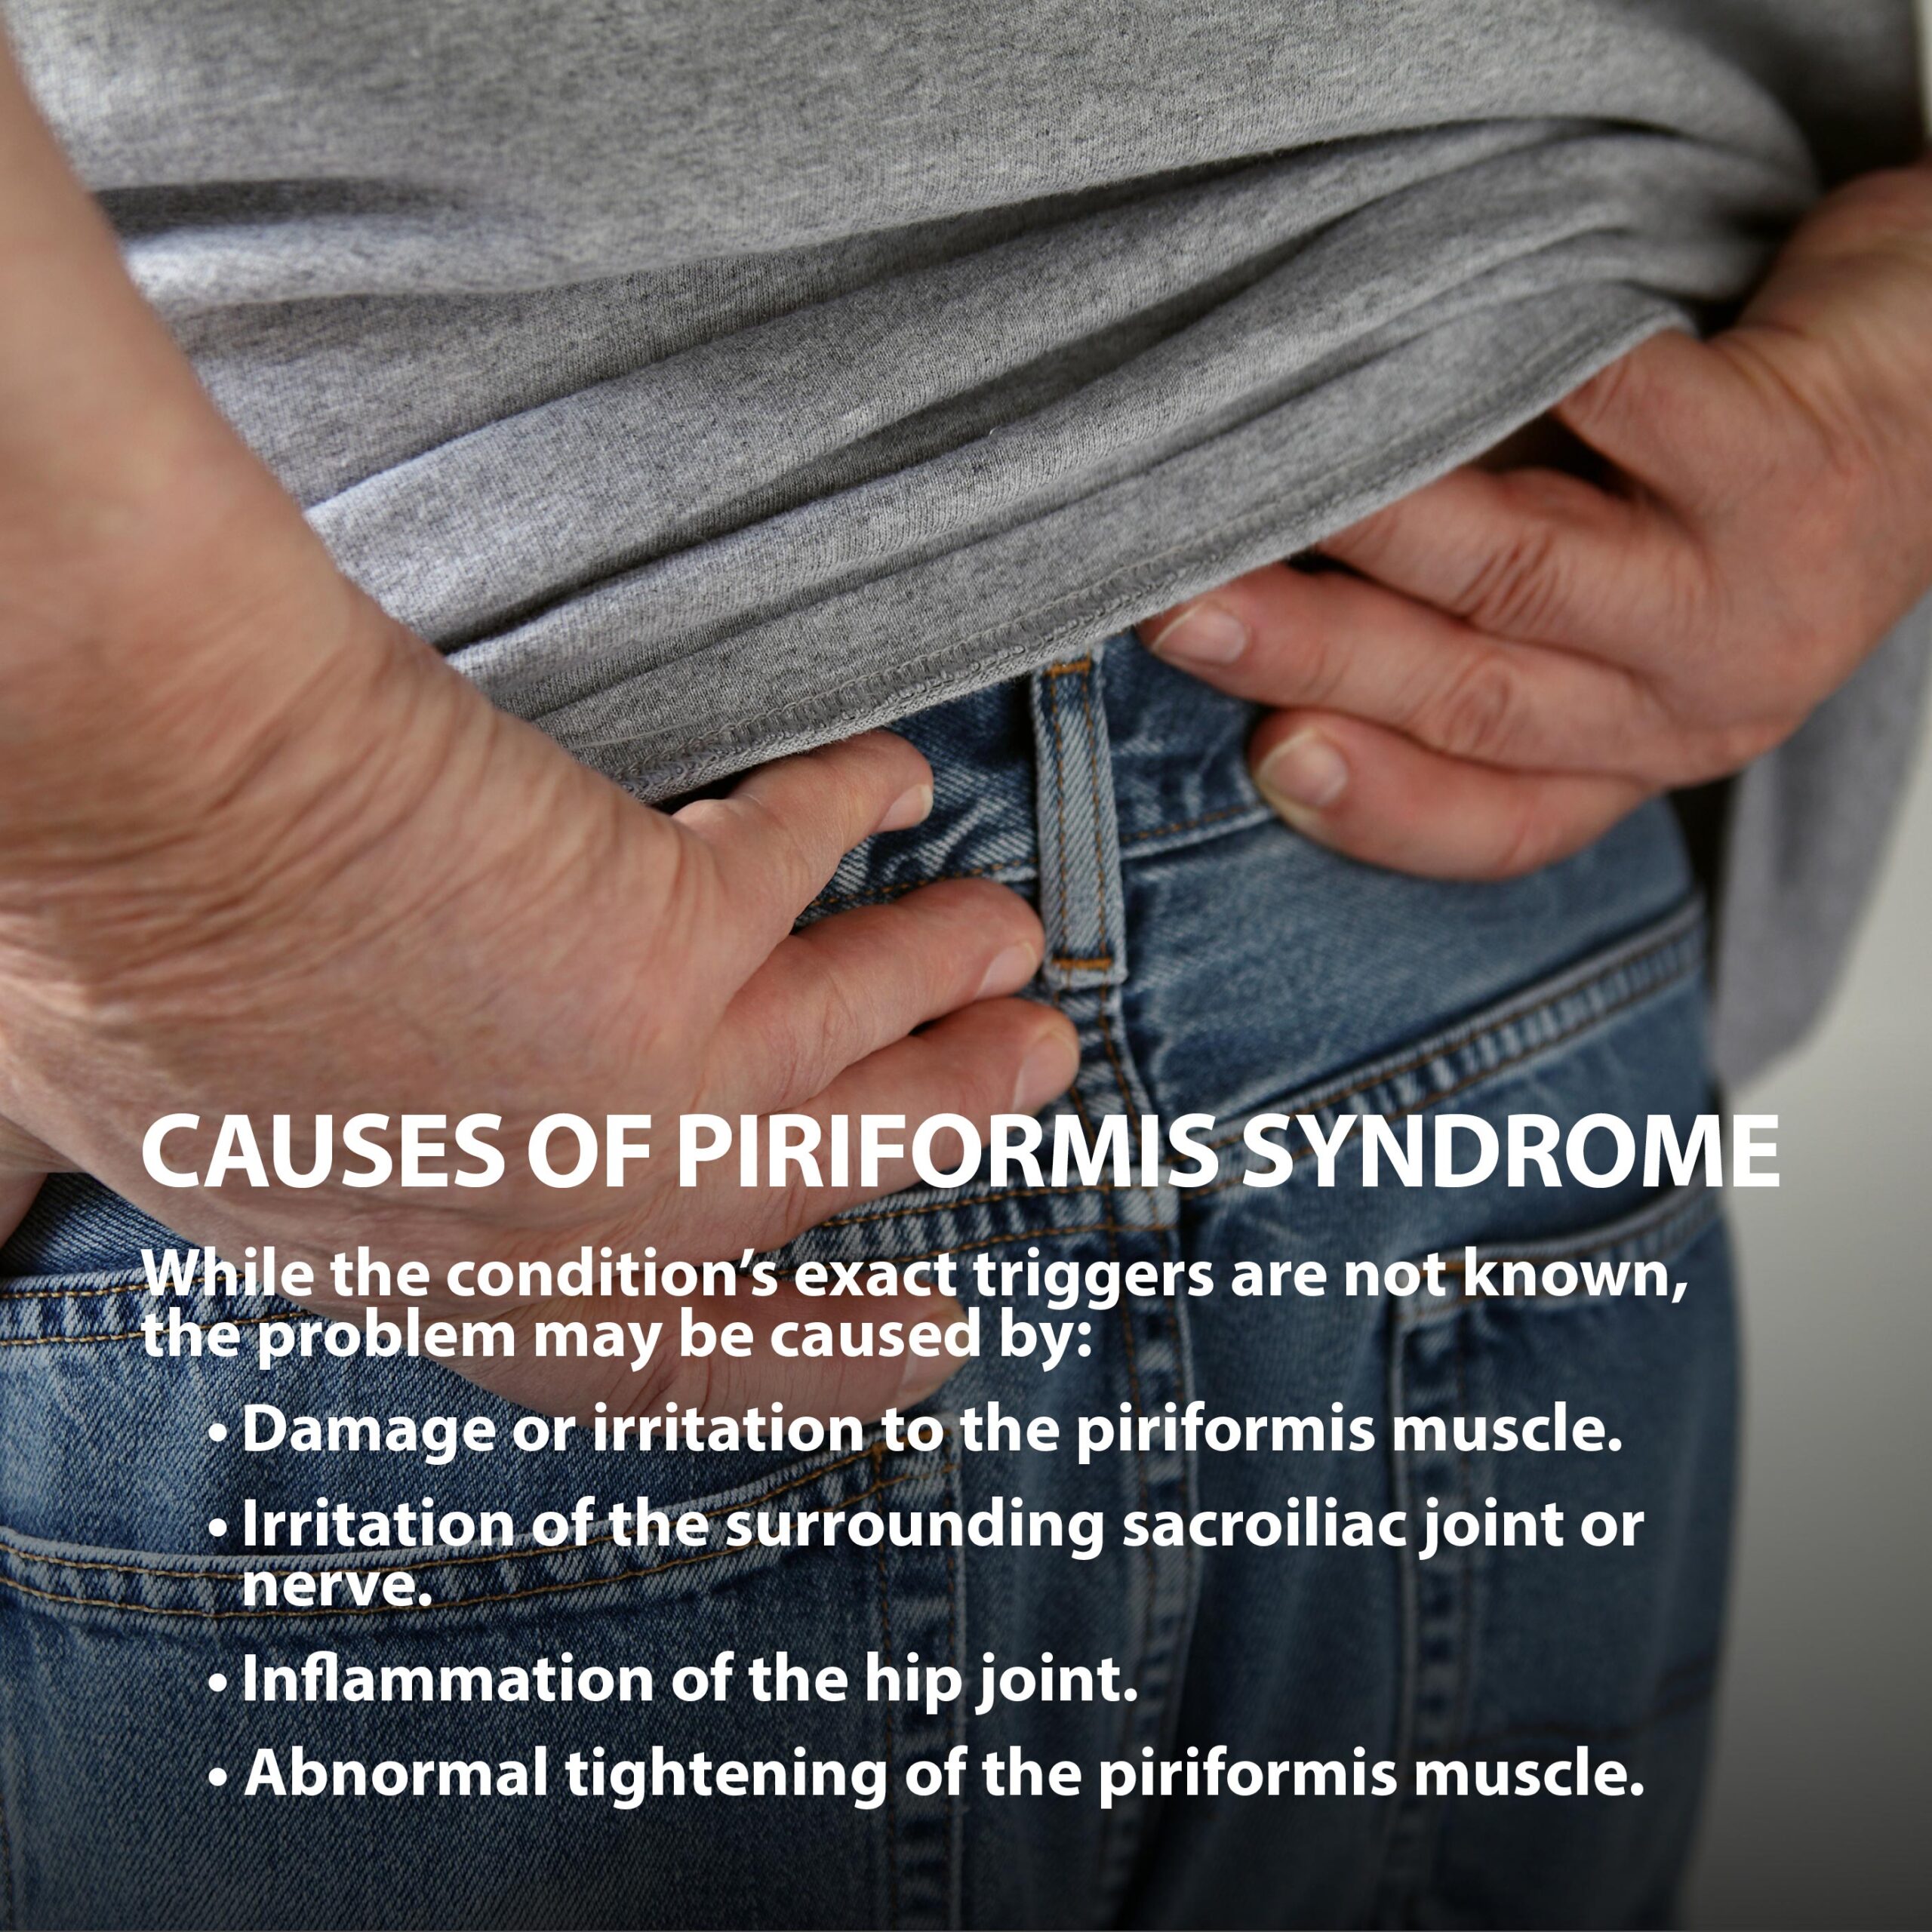 Piriformis Syndrome: Symptoms, Causes & More